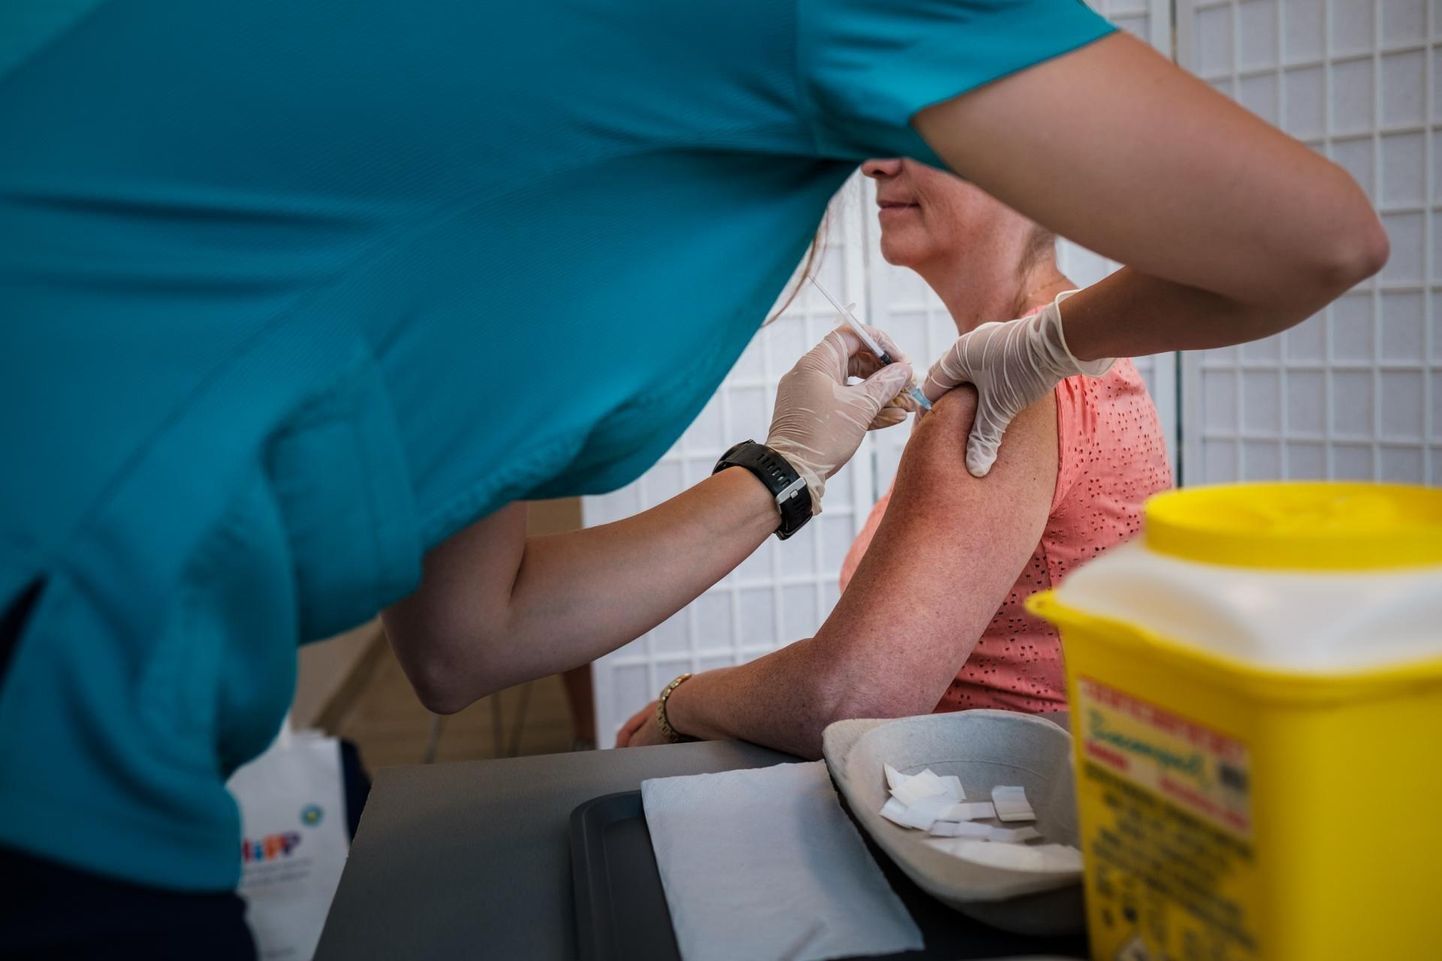 Üha lisandub riike, kus alustatakse kolmanda Covid-19 vaktsiinidoosi süstimisega. Eesti immunoprofülaktika eksperdikomisjon leiab, et kolmanda kaitsesüsti puhul pole praegu piisavalt teaduspõhiseid andmeid selle vajaduse, efektiivsuse ja ohutuse kohta.